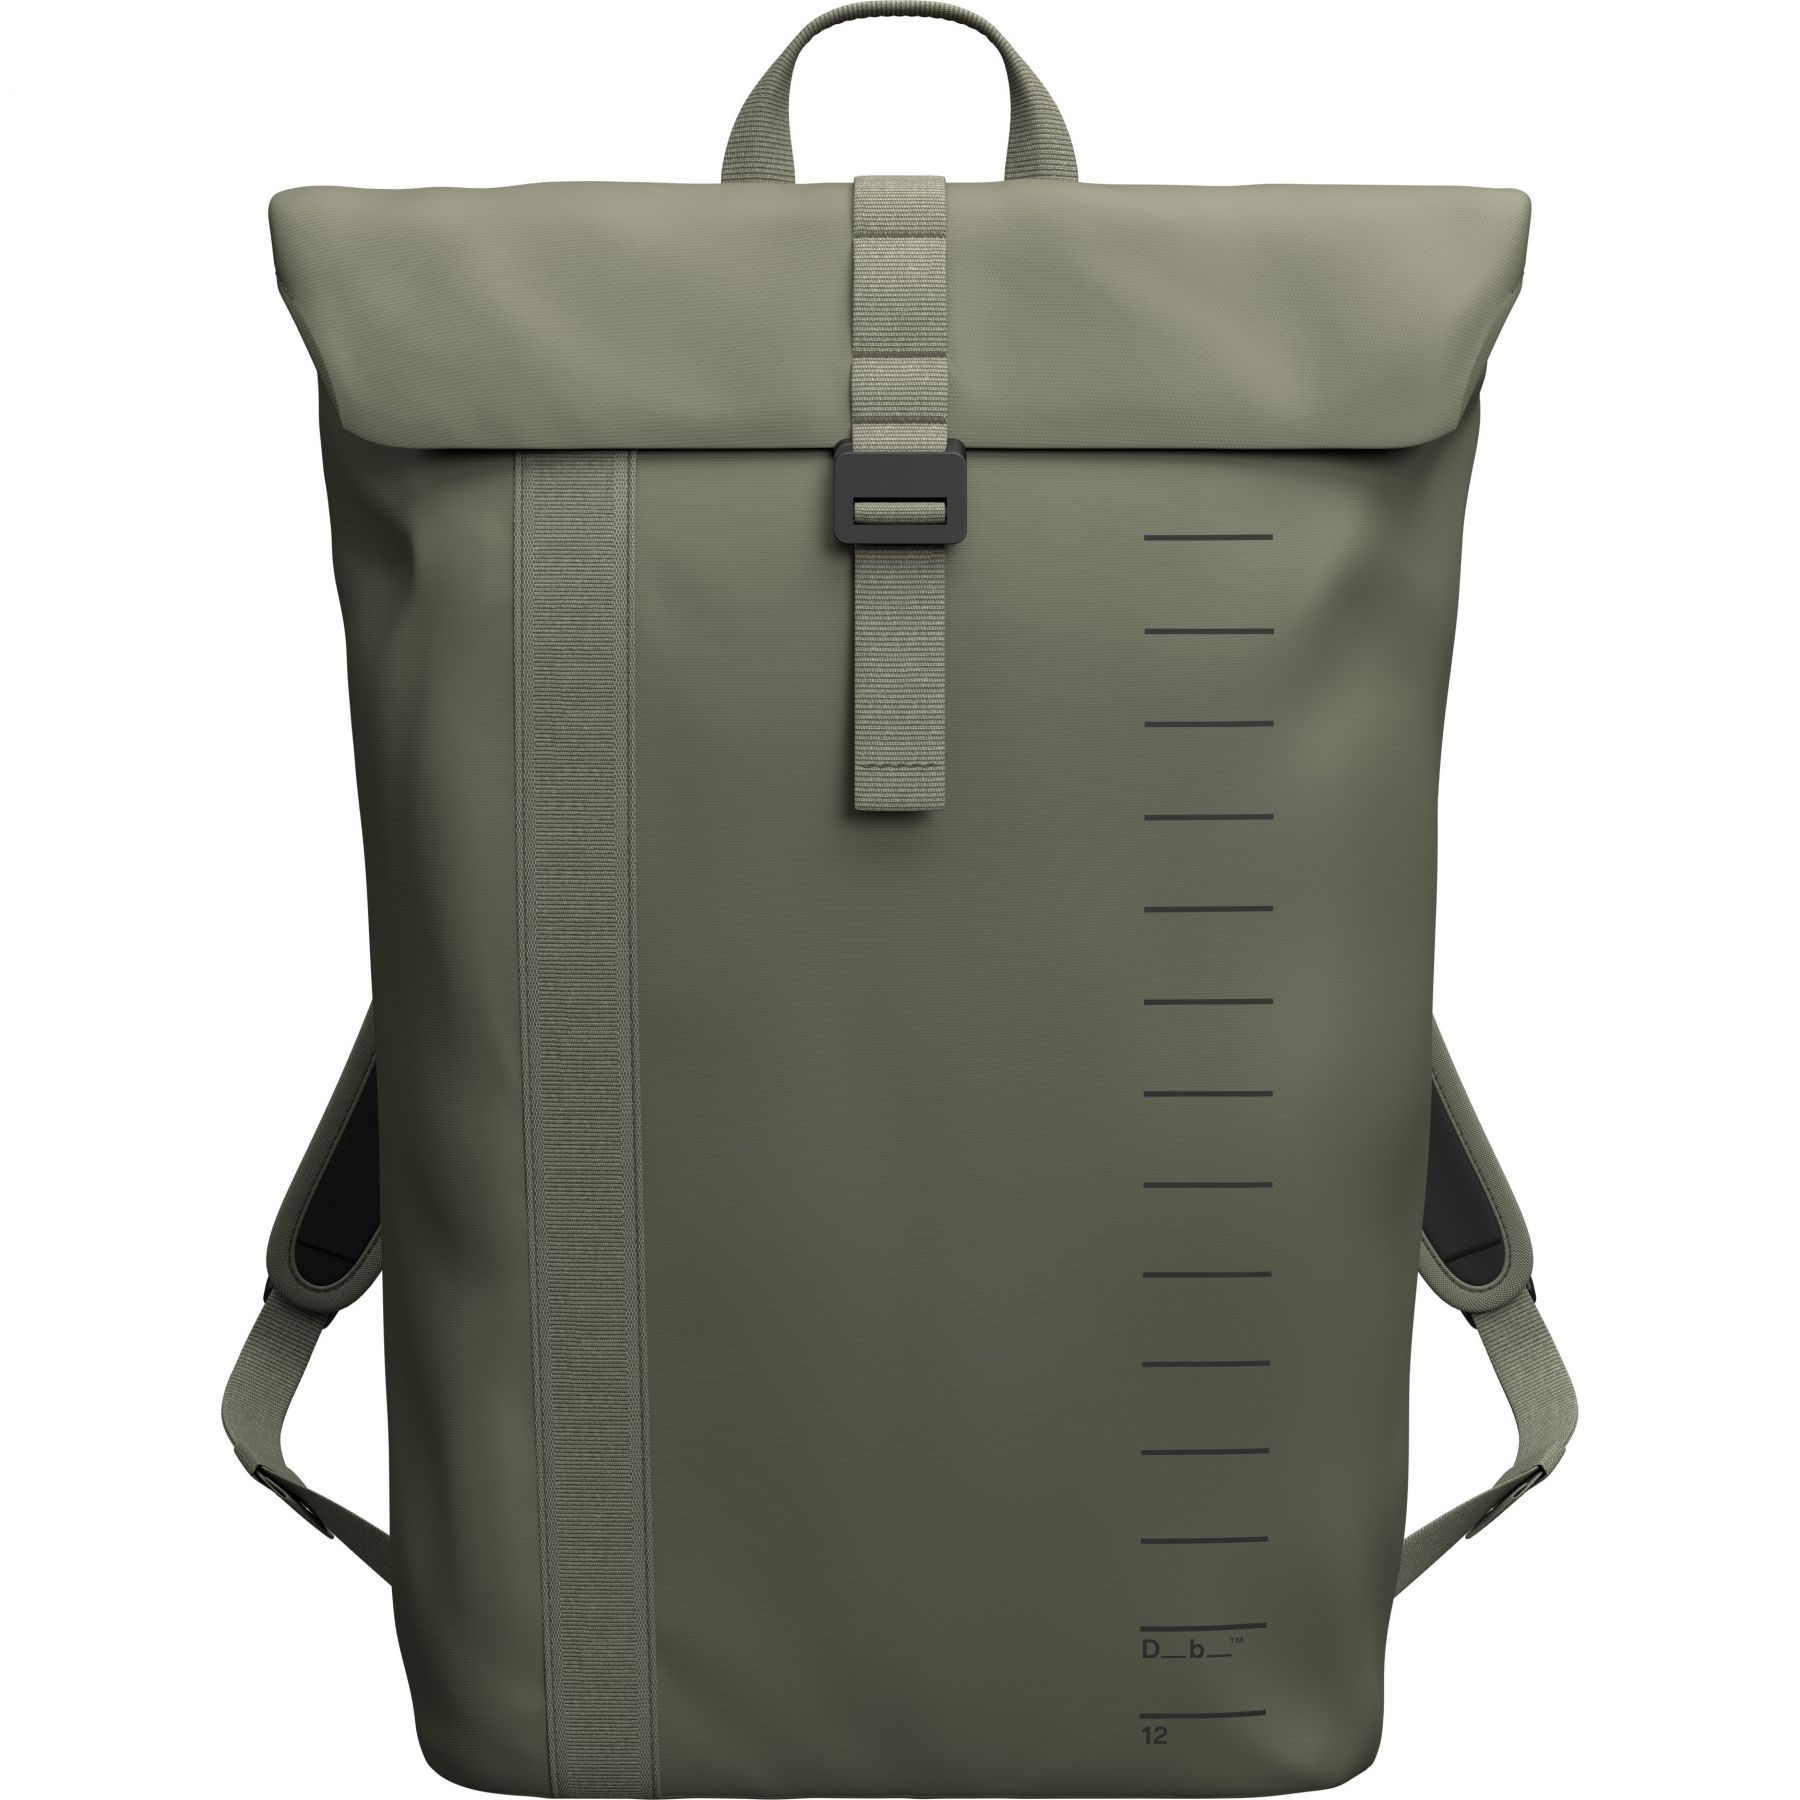 Brug Db Essential Backpack, 12L, moss green til en forbedret oplevelse